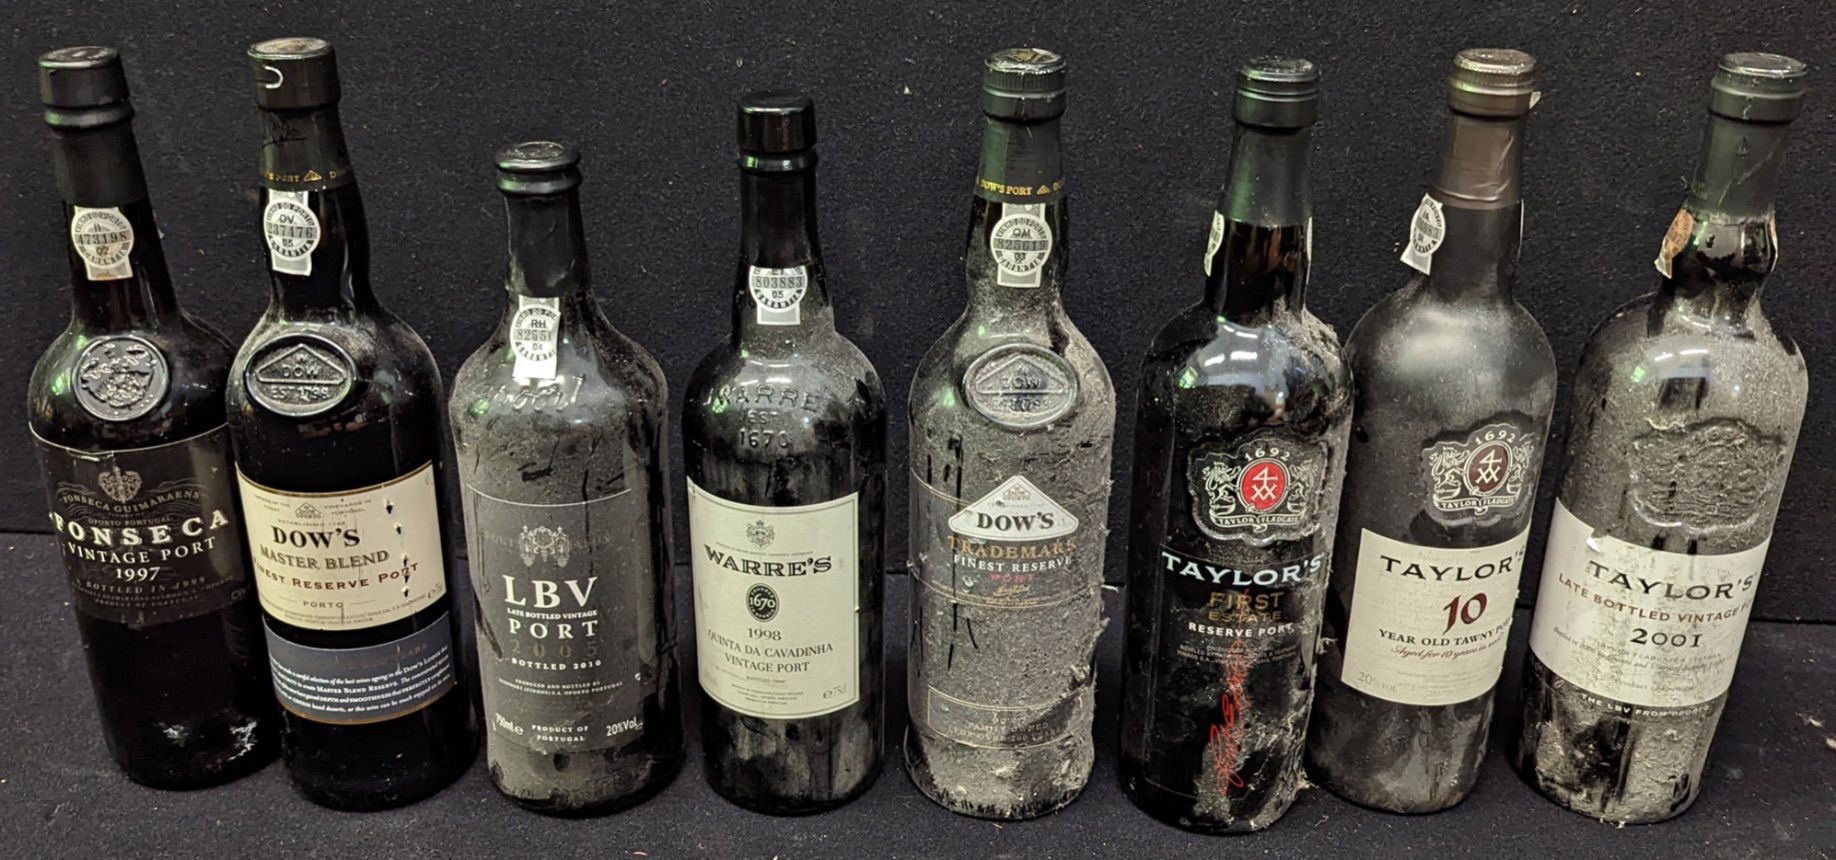 Taylors 8 bottiglie di Porto tra cui Taylor's, Dow's, Warre's ecc.